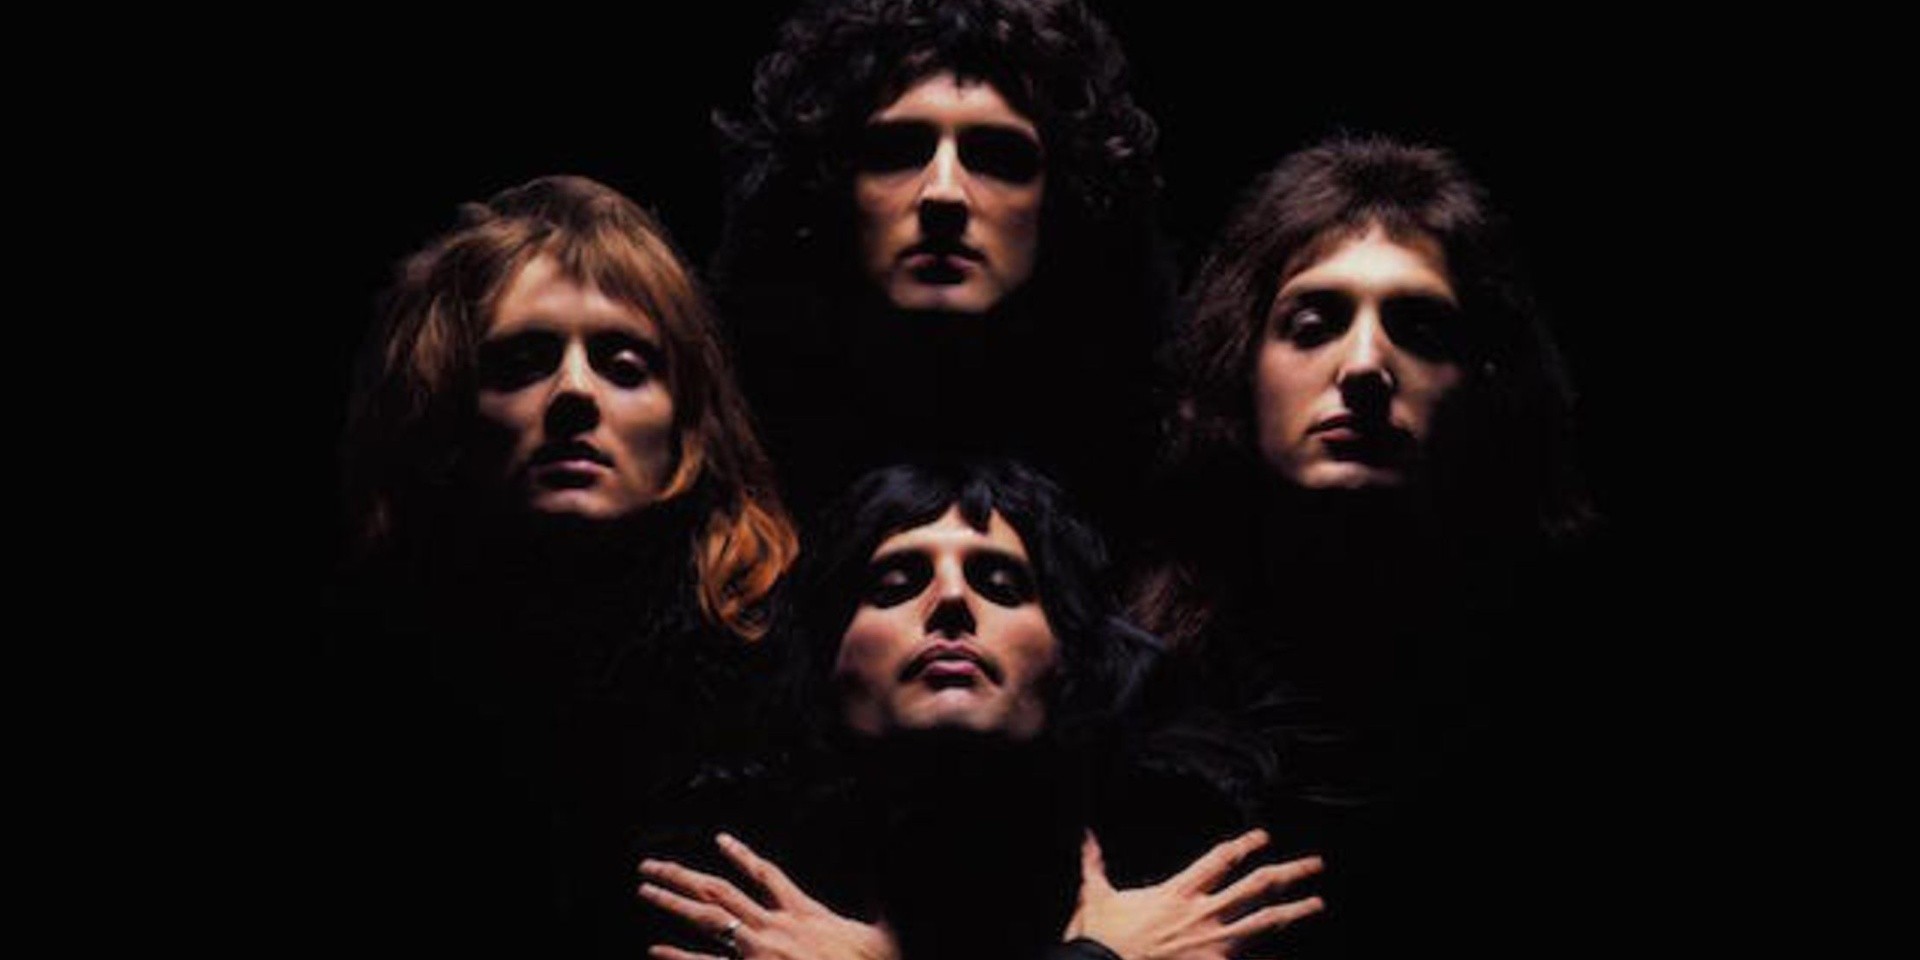 Queen’s ‘Bohemian Rhapsody’ clocks in 1 billion views on YouTube